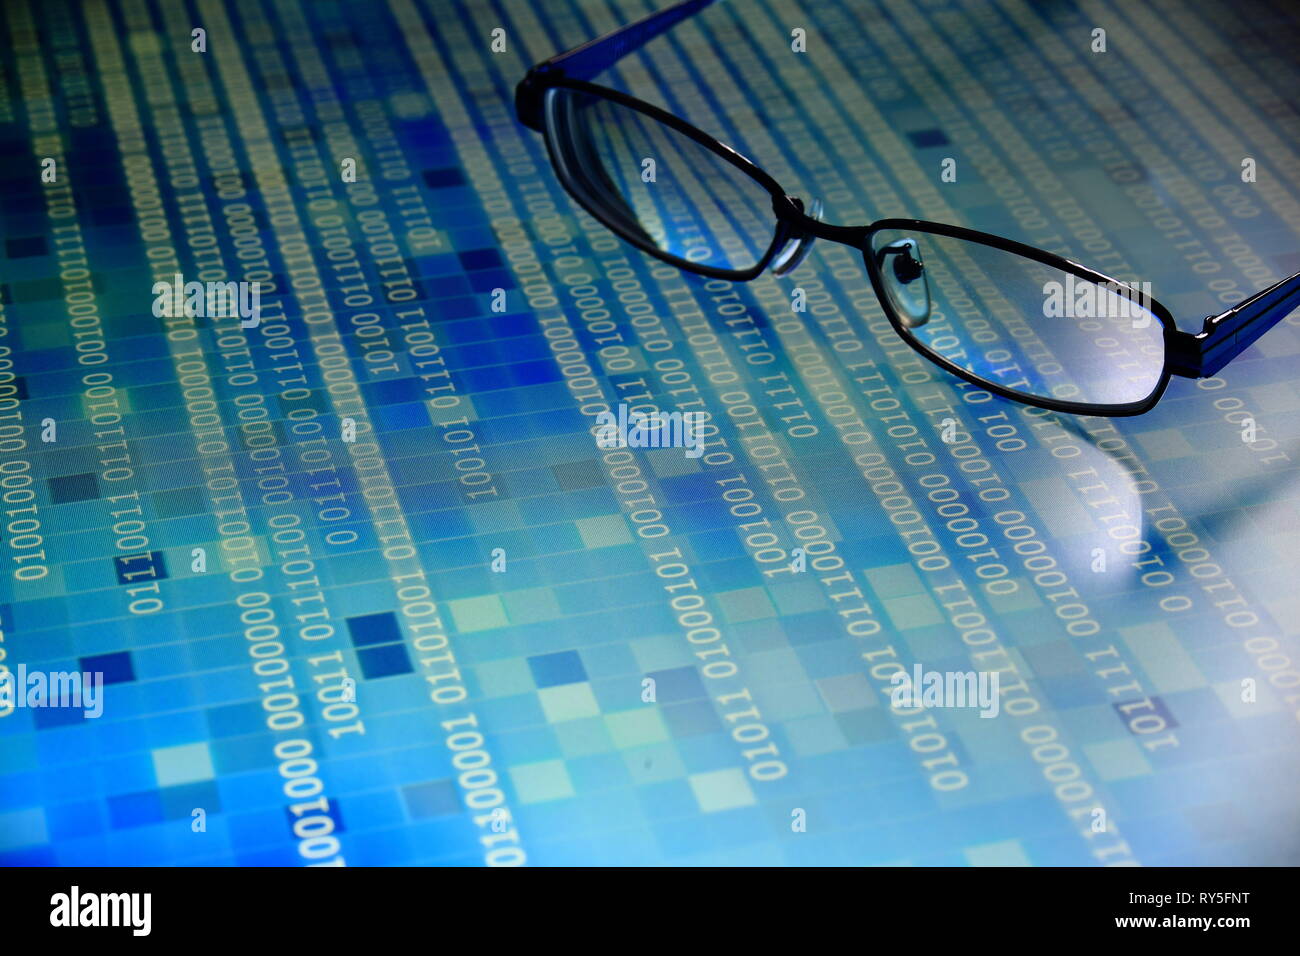 Análisis de grandes volúmenes de datos en código binario azul en el panel de led con fondo negro y vidrios colocados en el panel de información. hacker y análisis del código fuente. Foto de stock